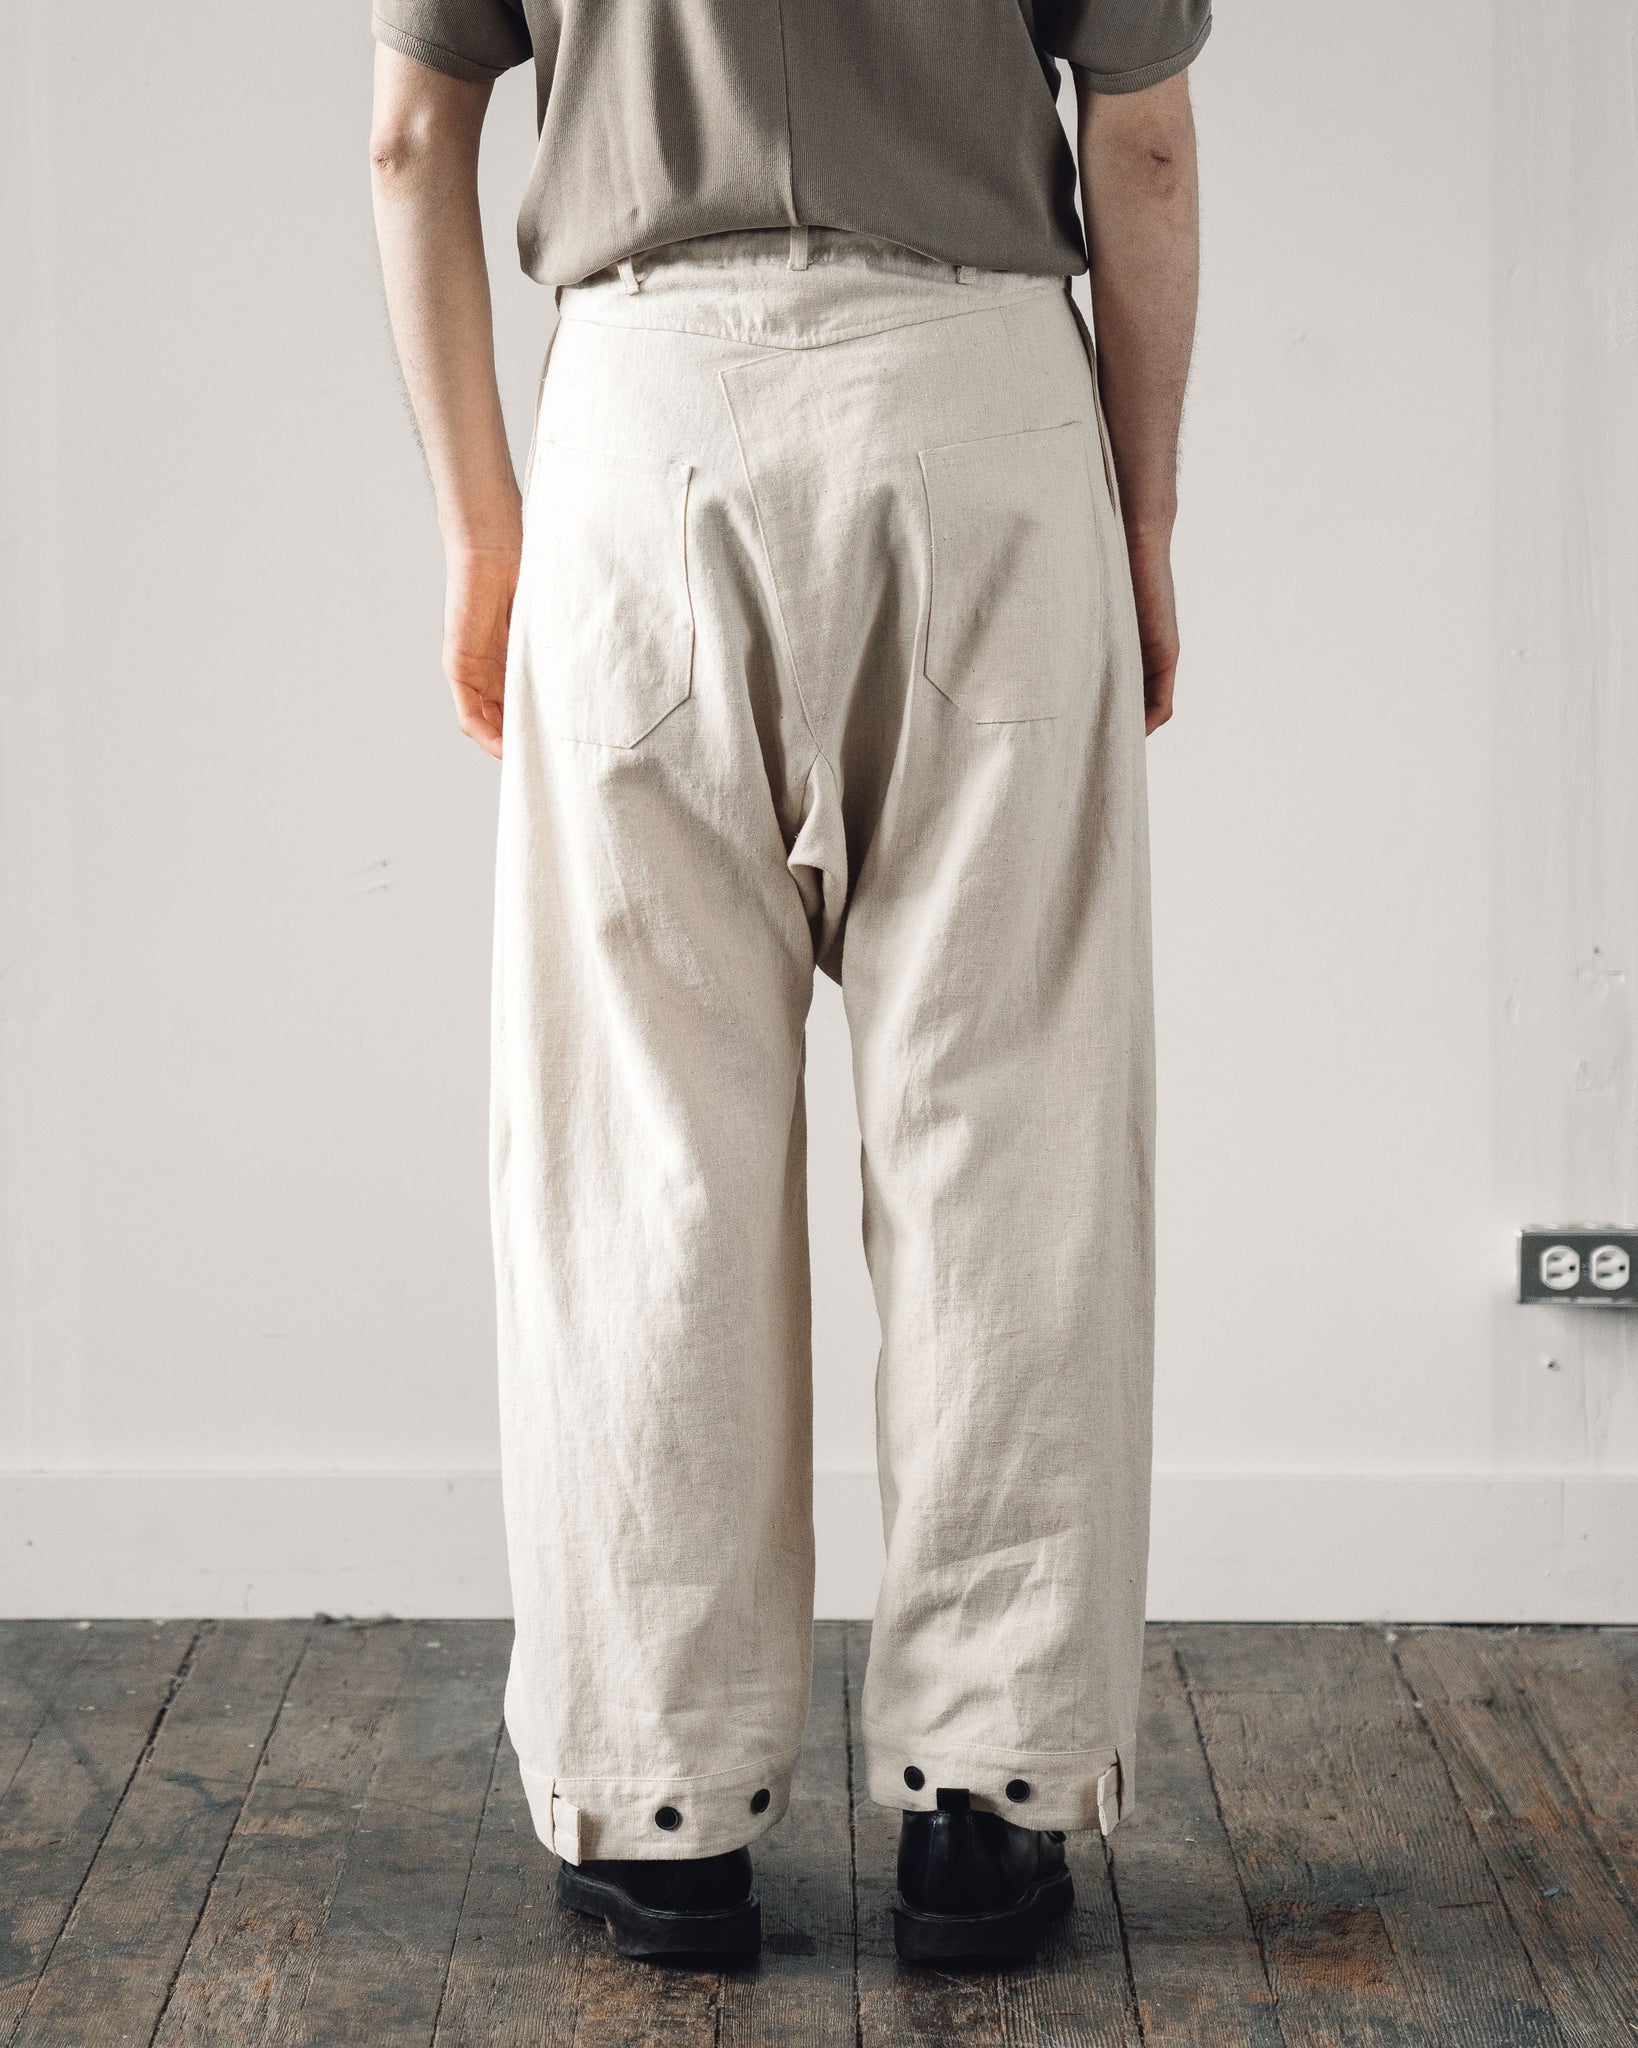 Jan-Jan Van Essche Gray #68 Trousers